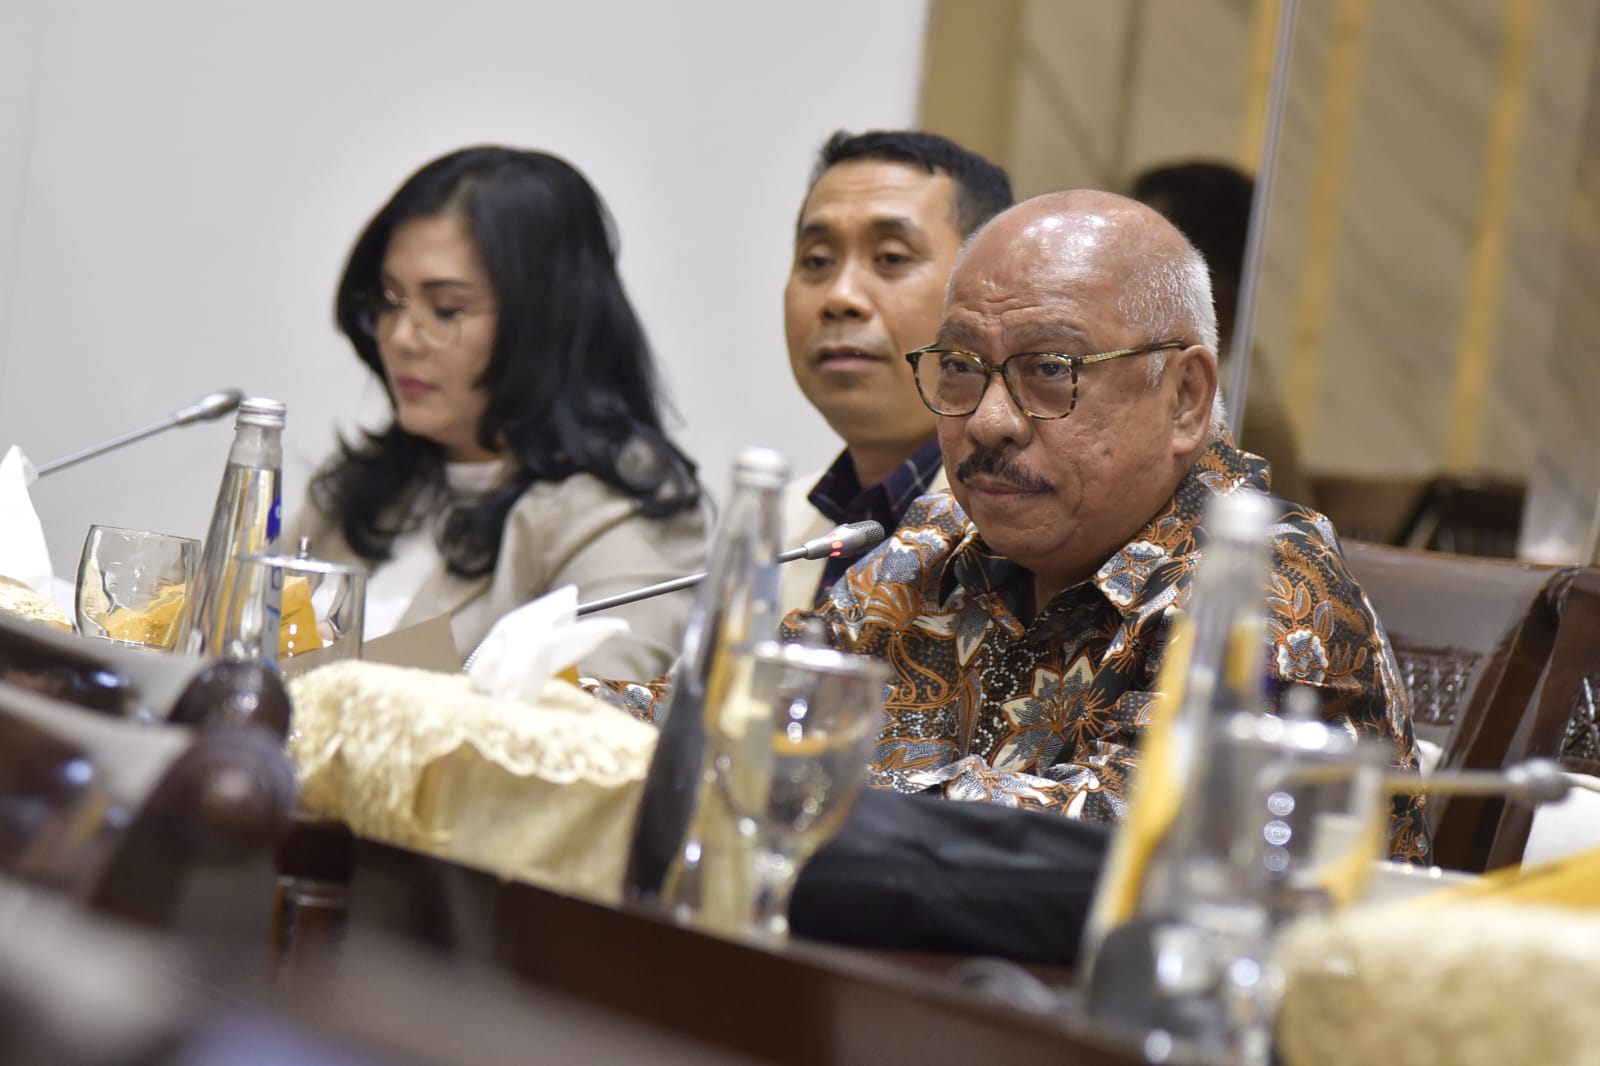 Legislator: Masalah Narkoba Sangat Parah Bisa Mengganggu Tujuan Indonesia Emas 2045